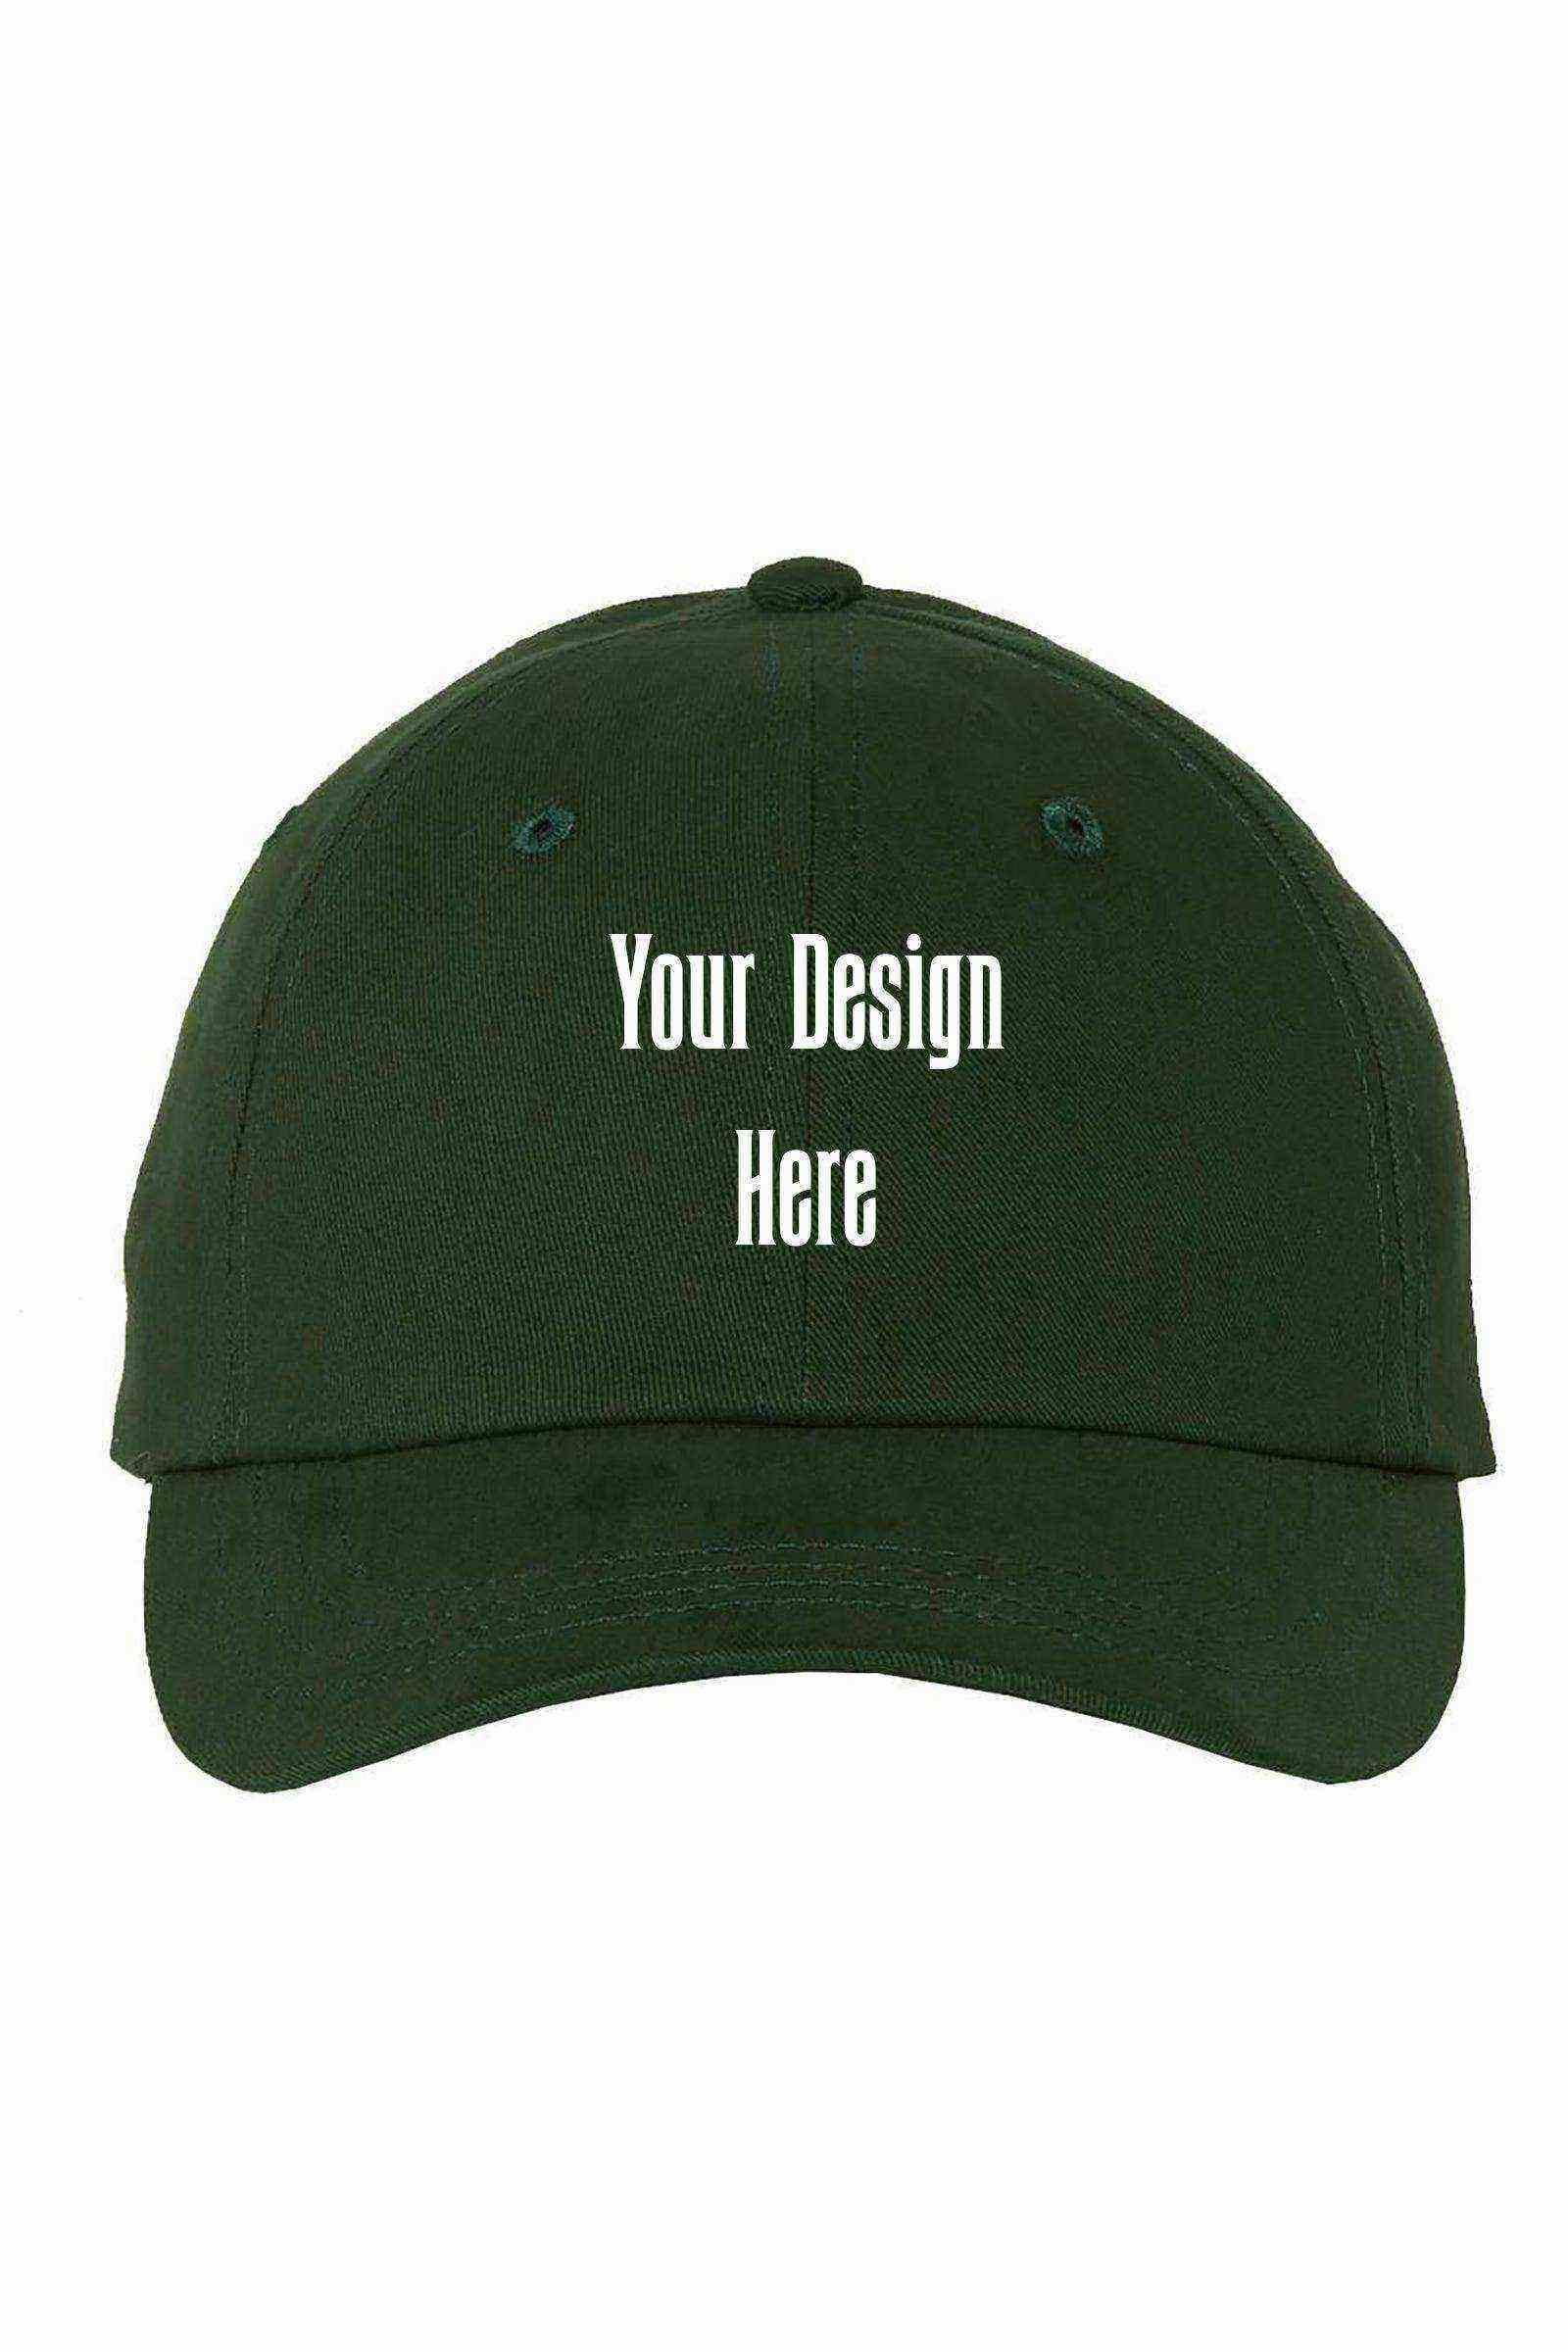 Custom Printed Hats - Dylan's Tees